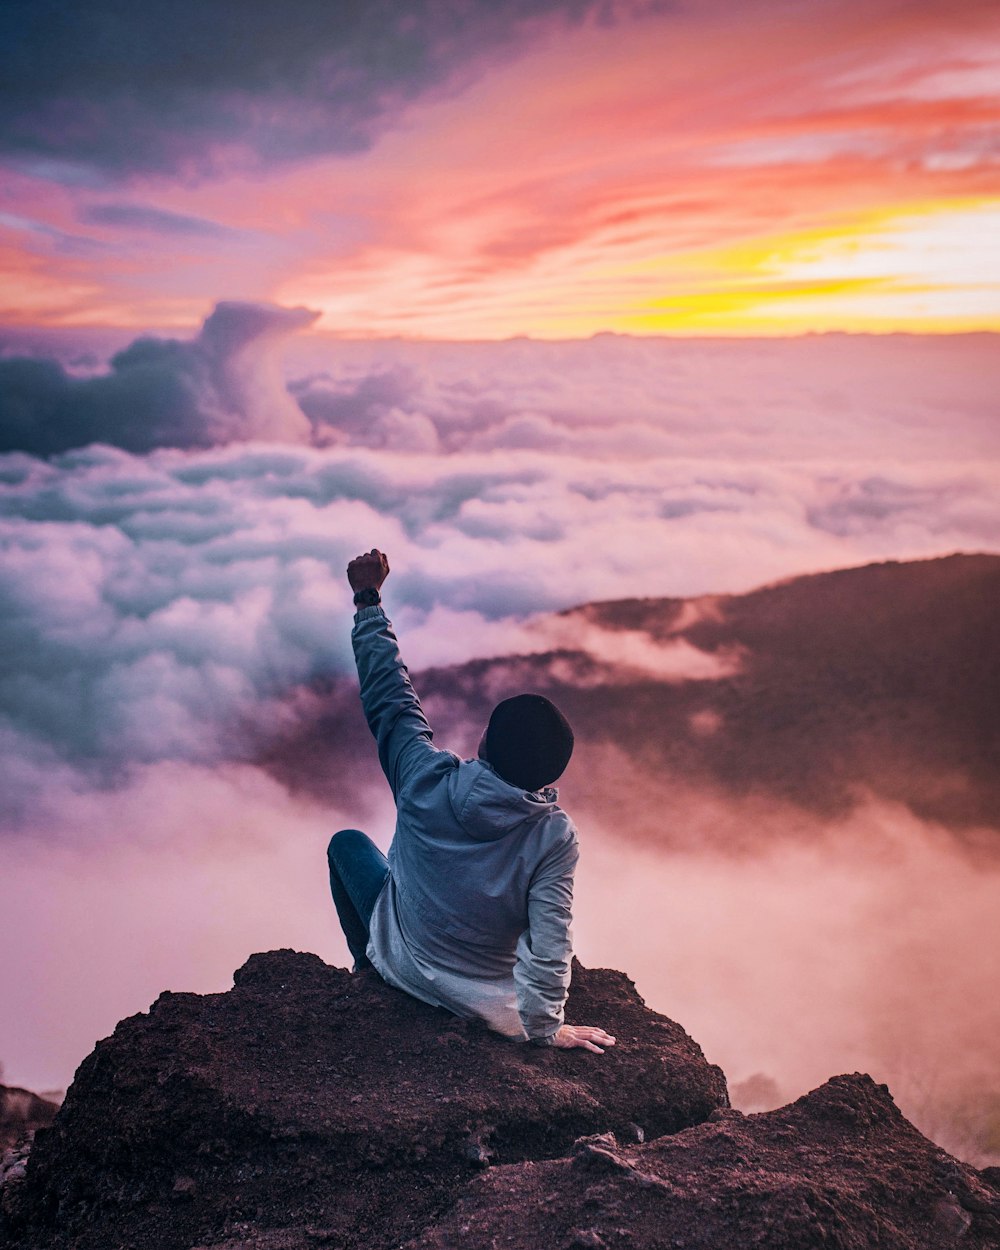 Mann sitzt auf Bergklippe mit Blick auf weiße Wolken, die zur goldenen Stunde mit einer Hand aufsteigen